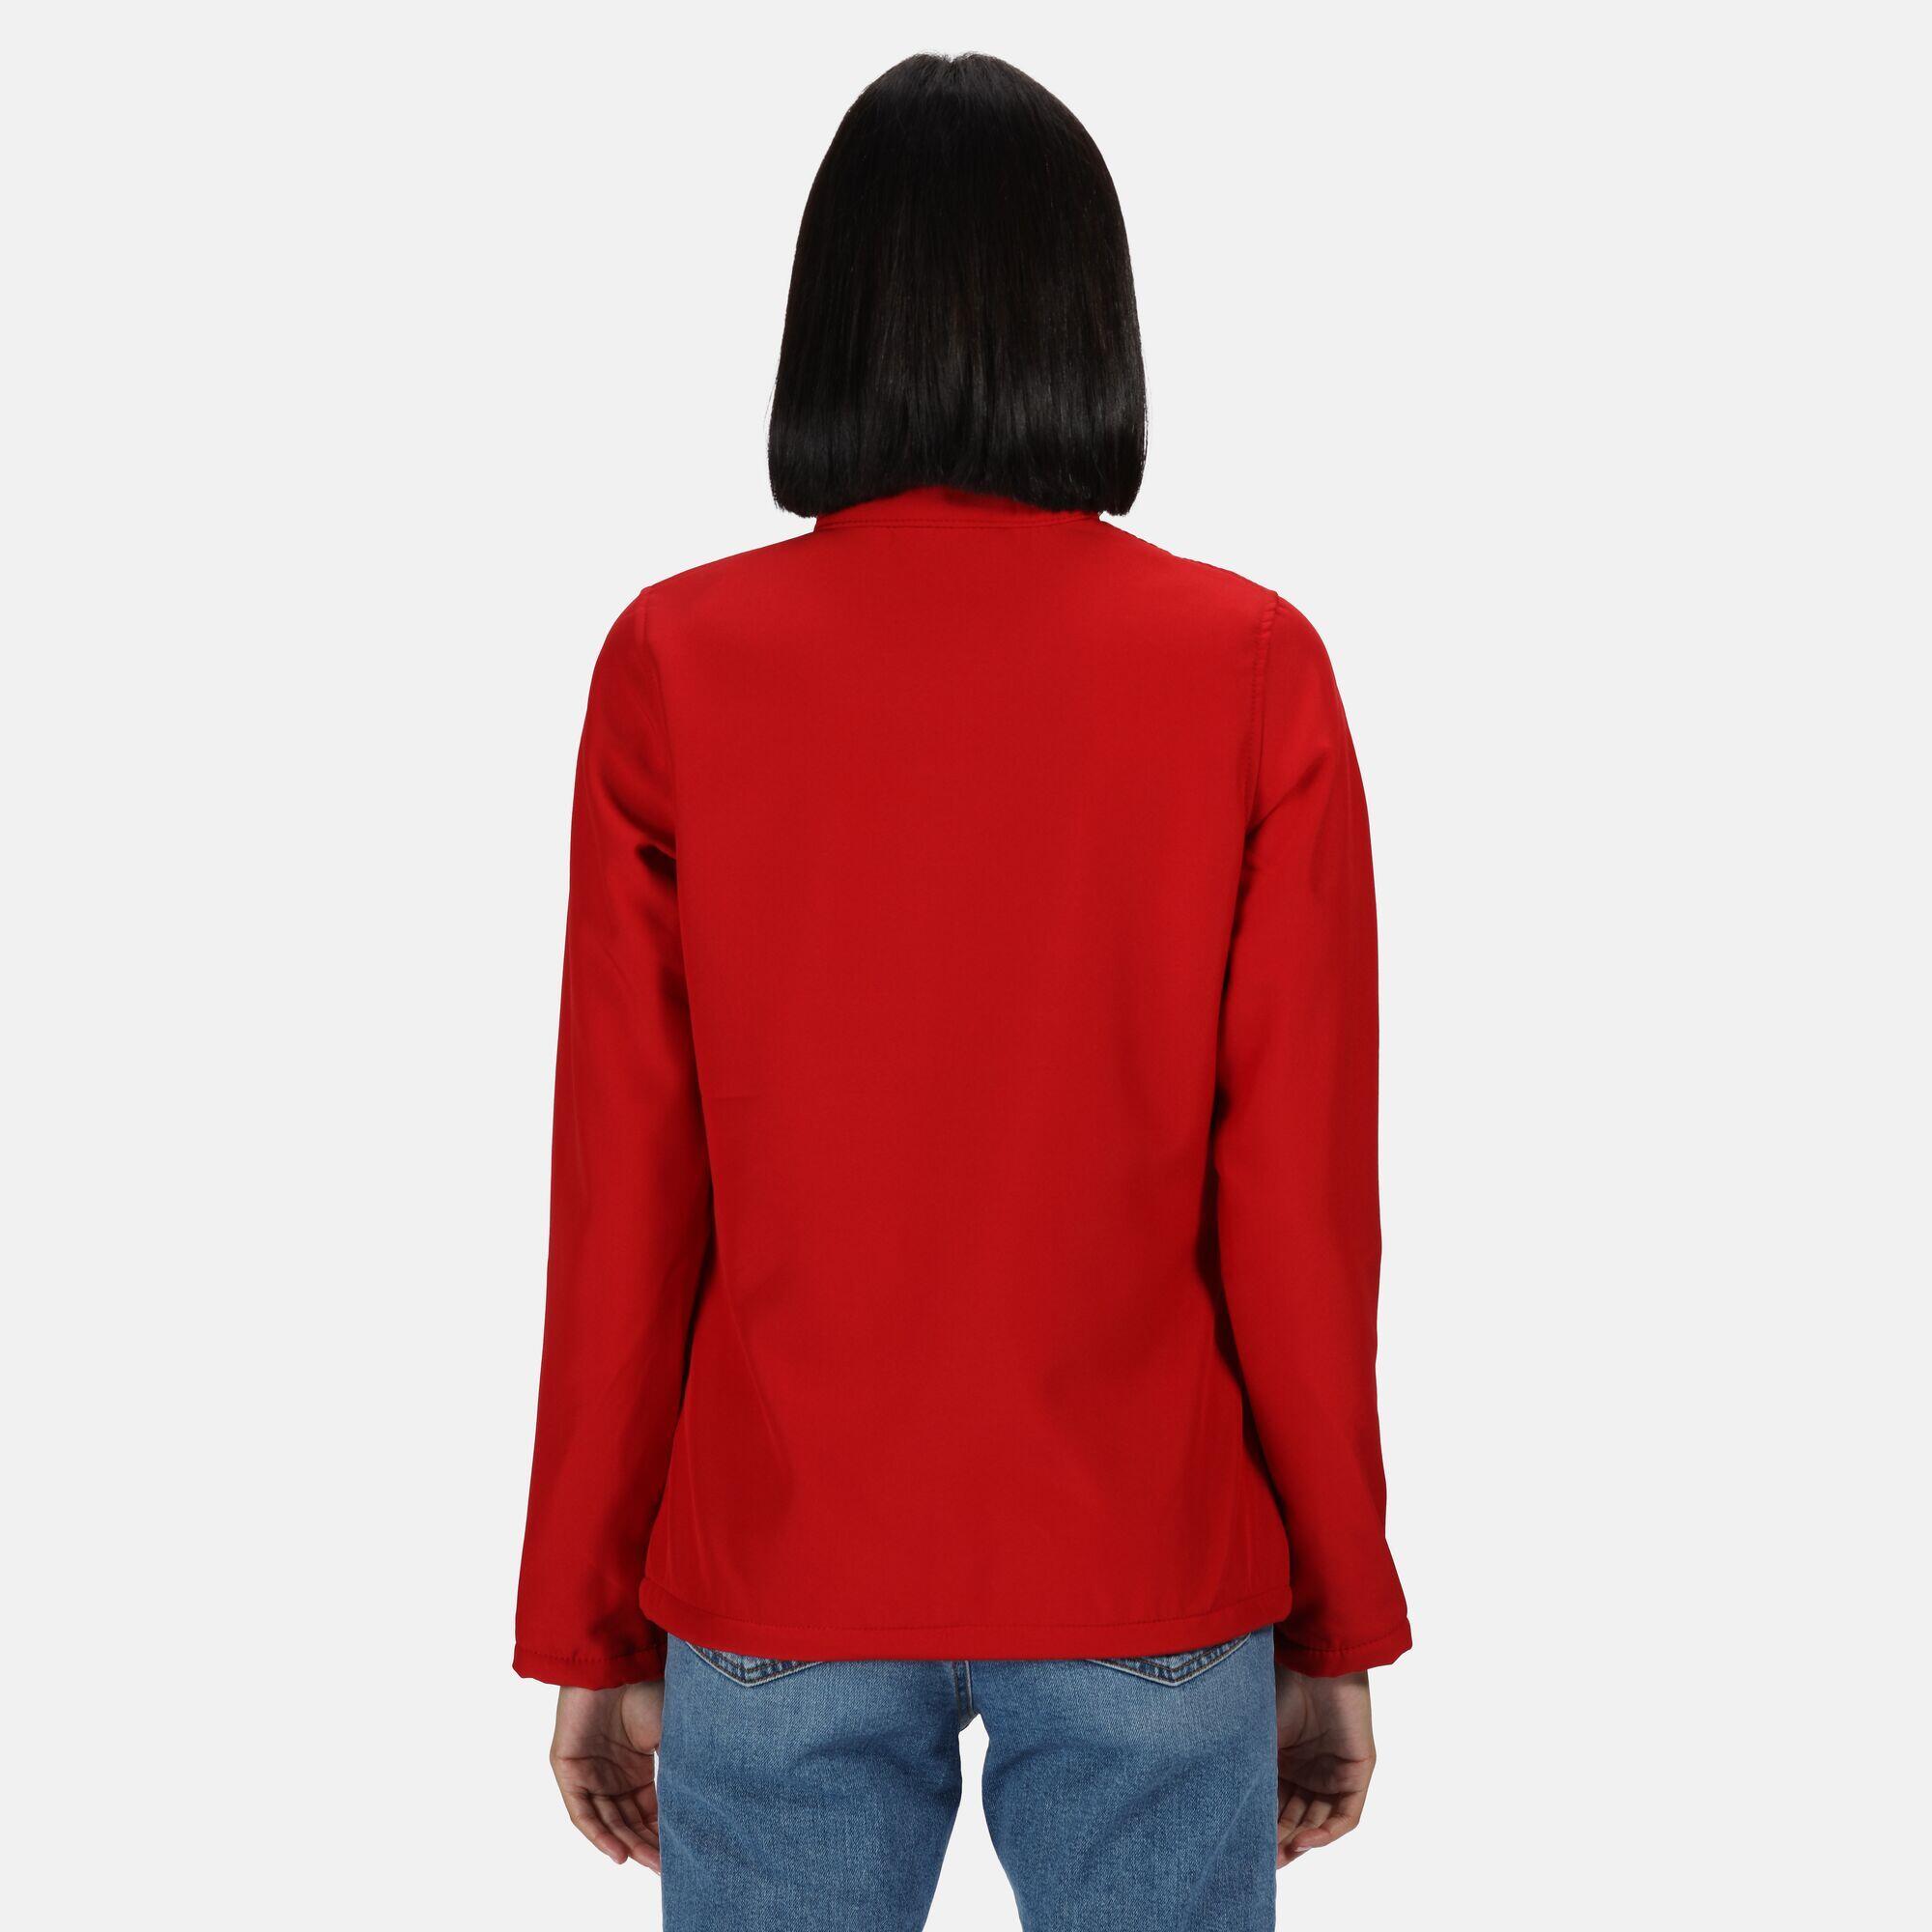 Womens/Ladies Ablaze Printable Softshell Jacket (Classic Red/Black) 3/4